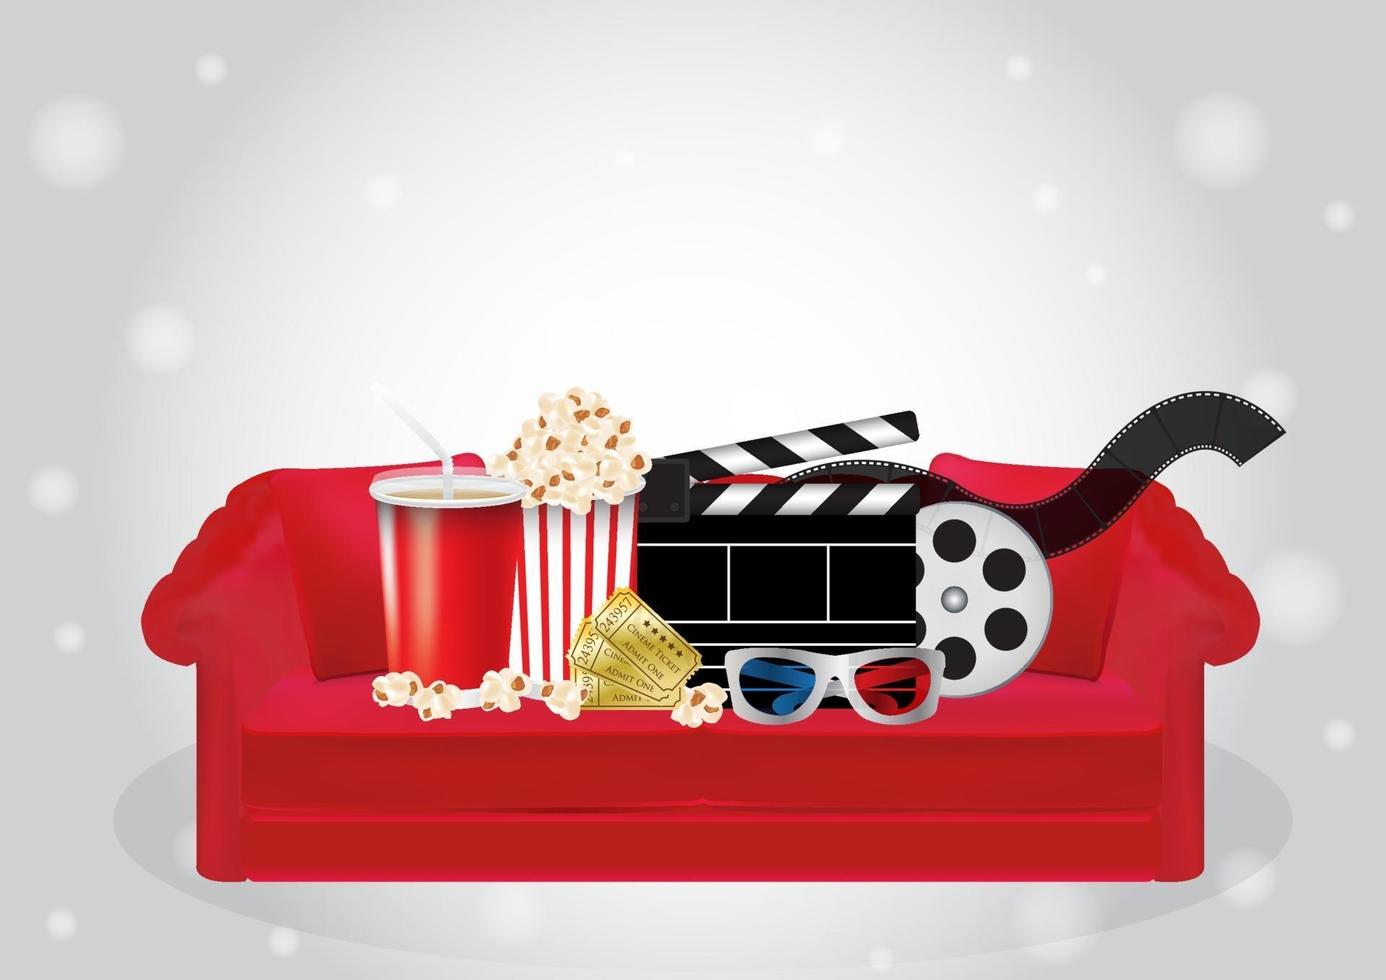 popcorn, drankje, filmfilm, 3D-bril en bioscoopkaartje op een rode bank vector